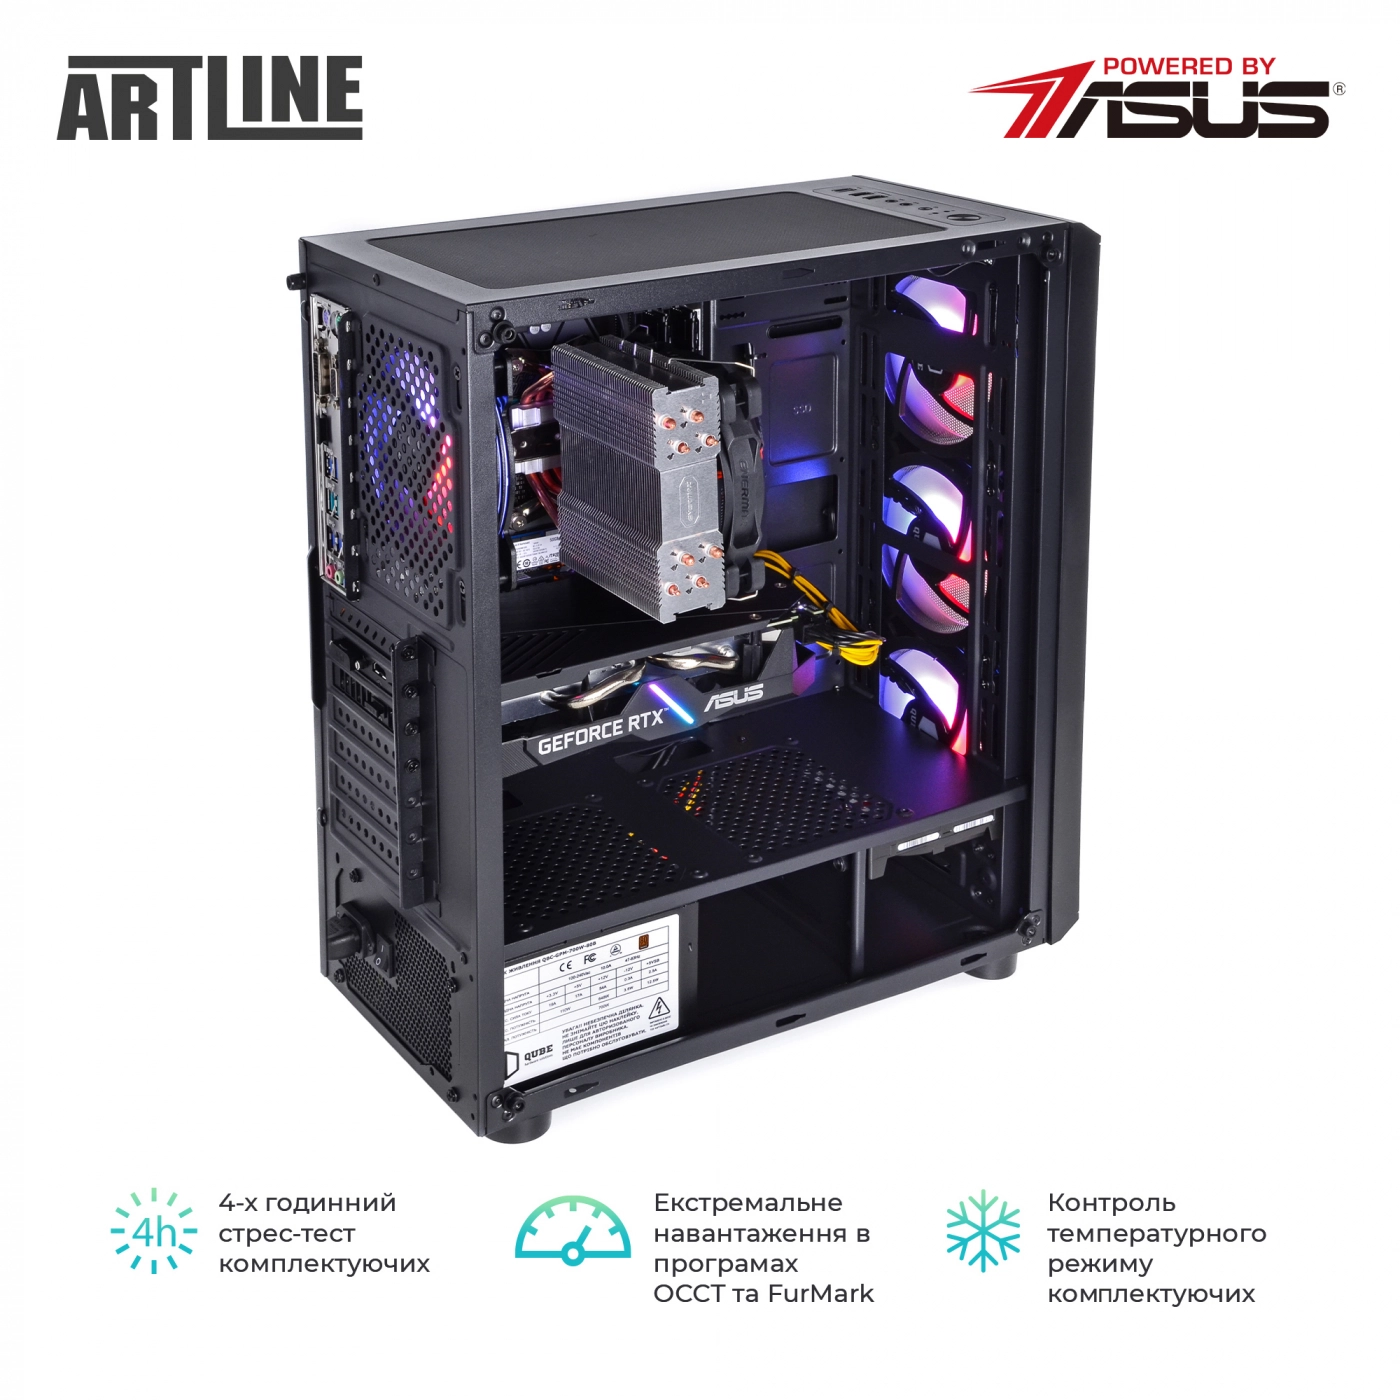 Купить Компьютер ARTLINE Gaming X53v36 - фото 8